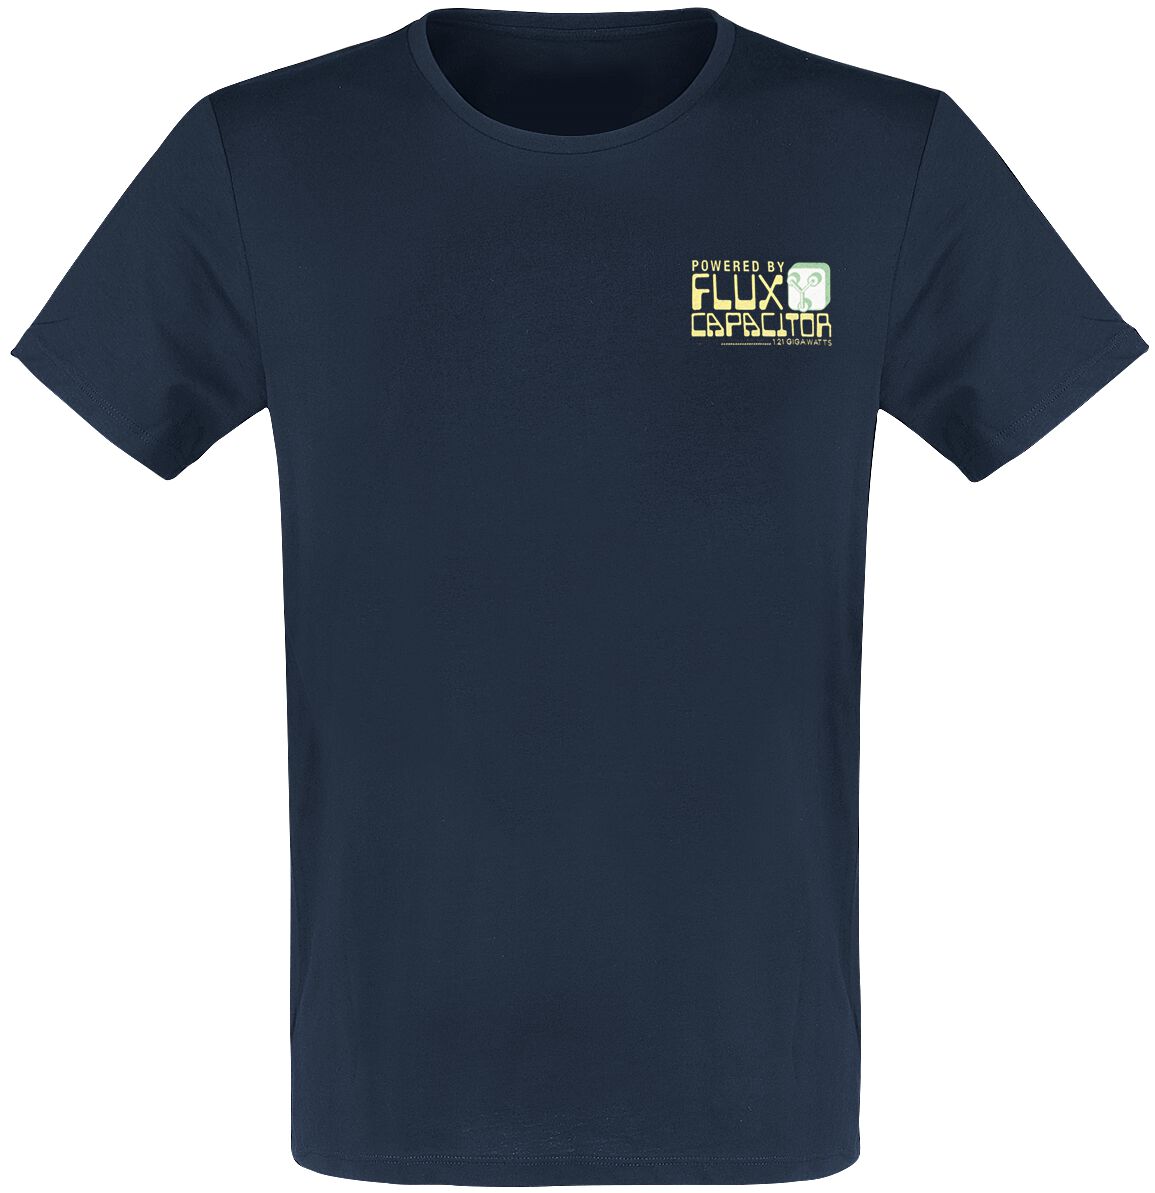 Zurück in die Zukunft T-Shirt - Powered By Flux Capacitor - S - für Männer - Größe S - blau  - Lizenzierter Fanartikel